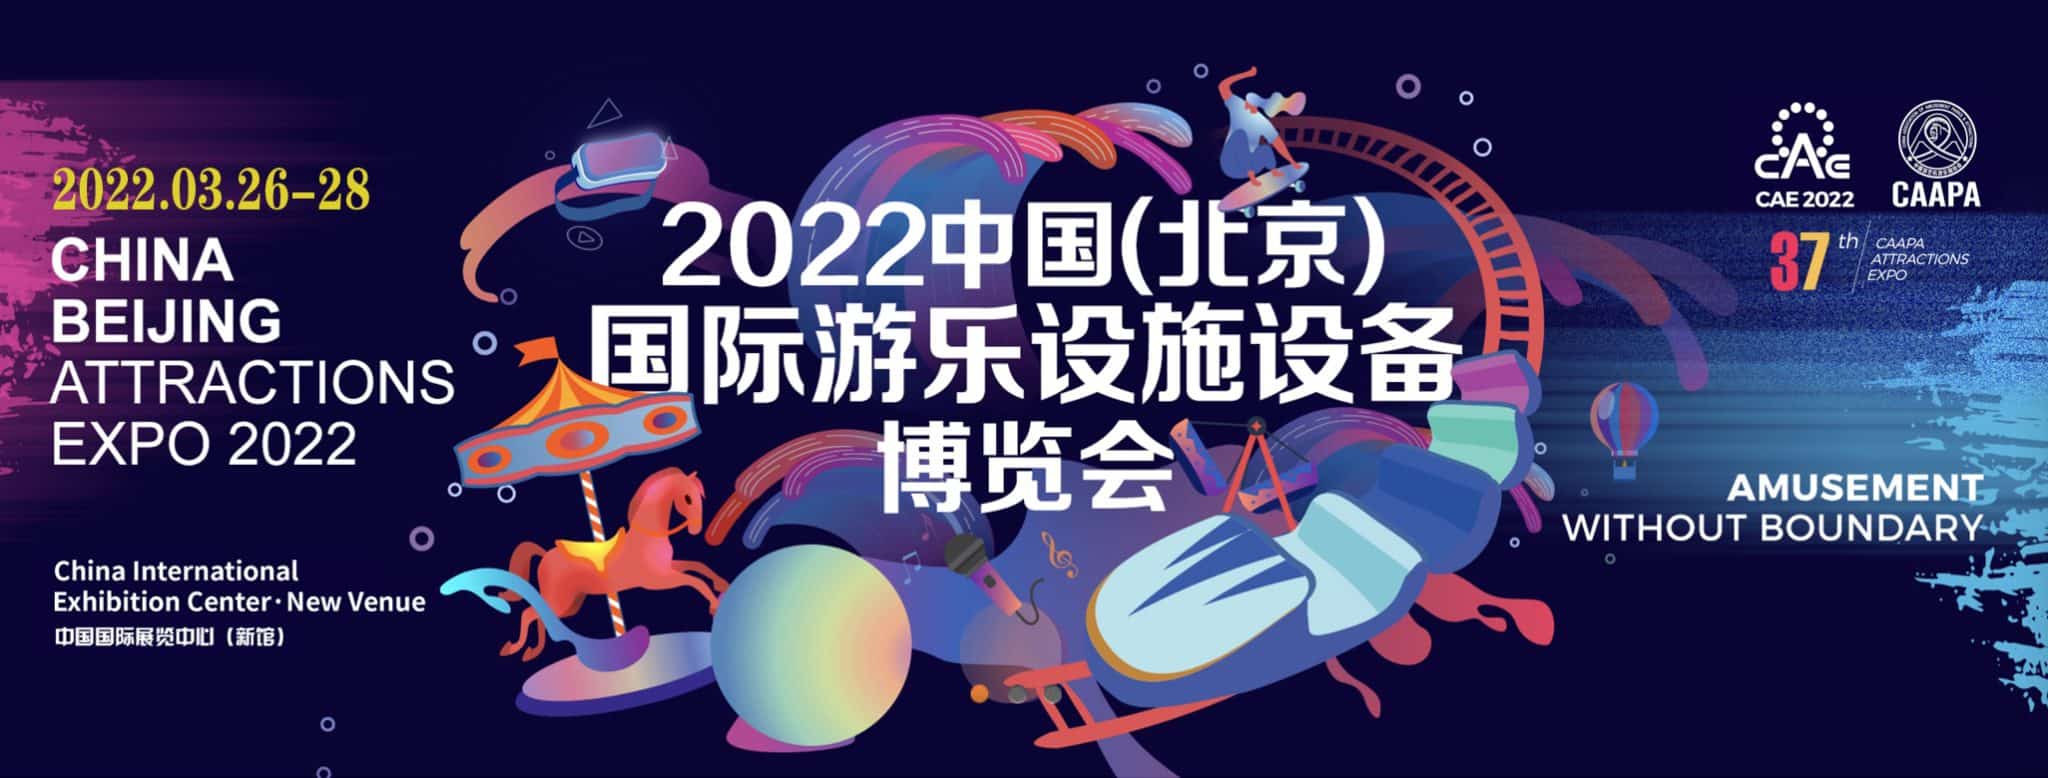 CAE Beijing 2022